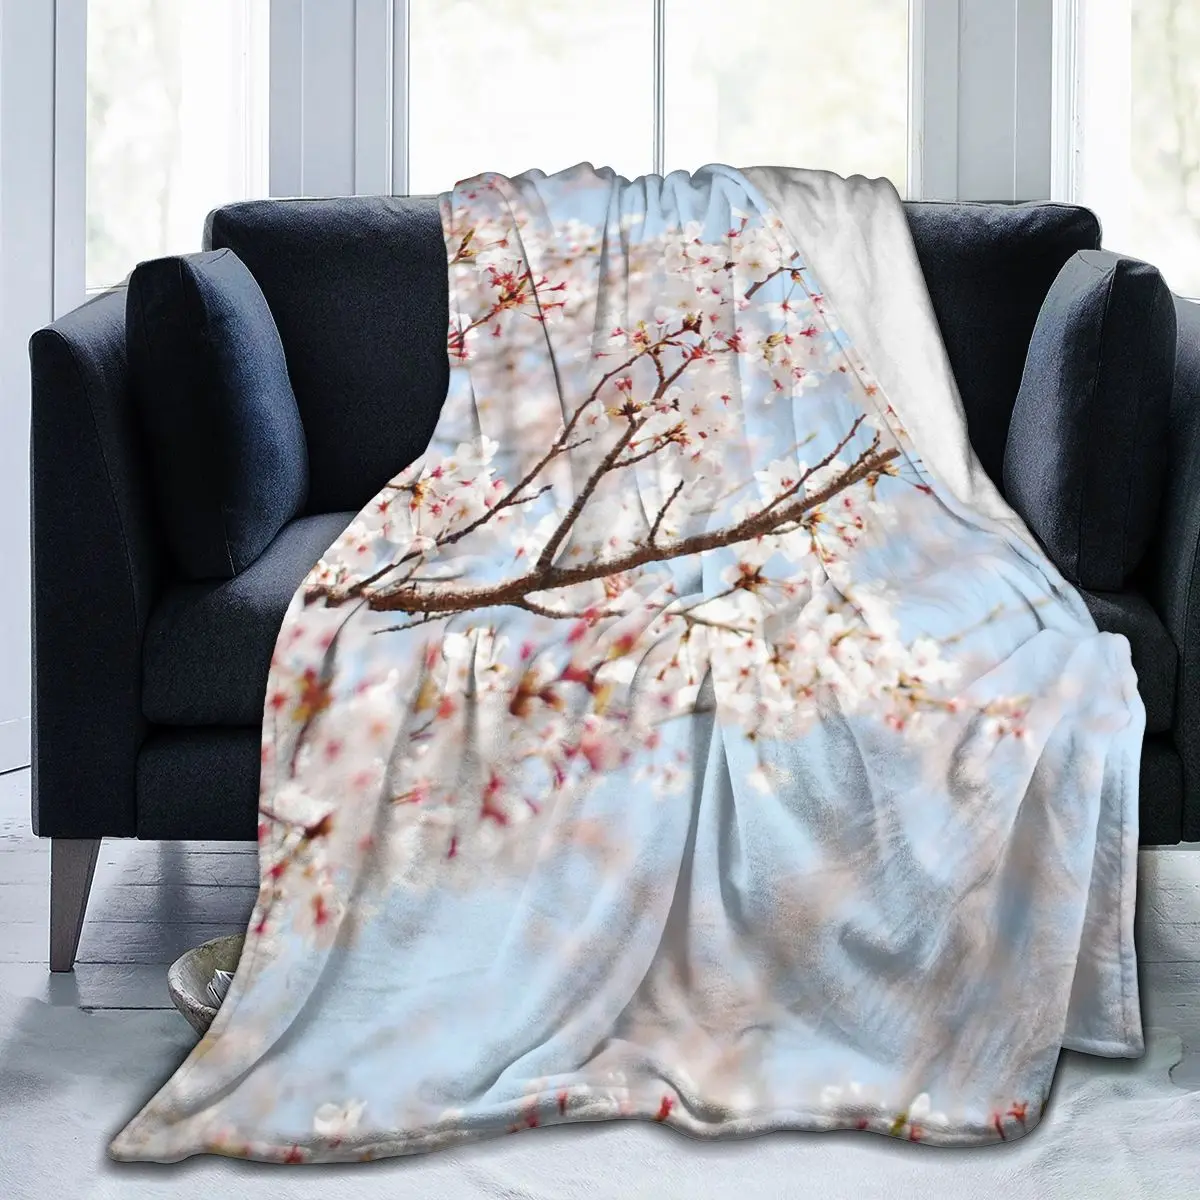 

Manta de franela с 3D принтом цветов, ropa de cama suave, cubierta de cama, decorar textil para el доме